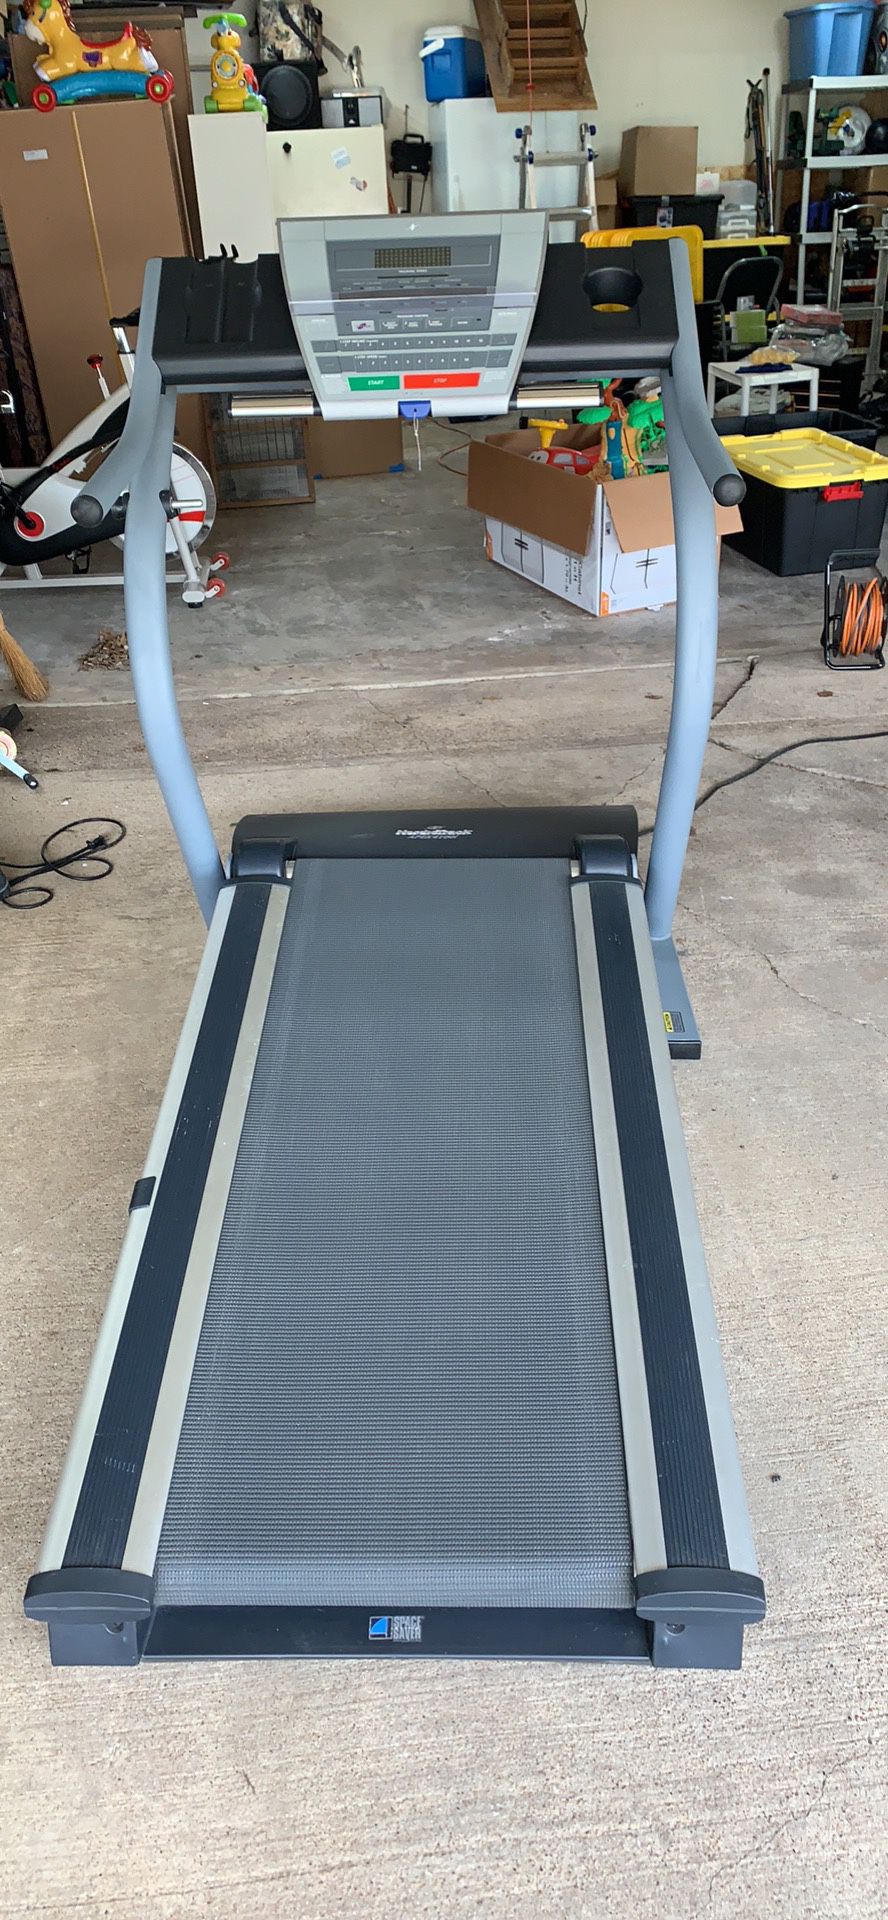 NordicTrack APEX4100i treadmill